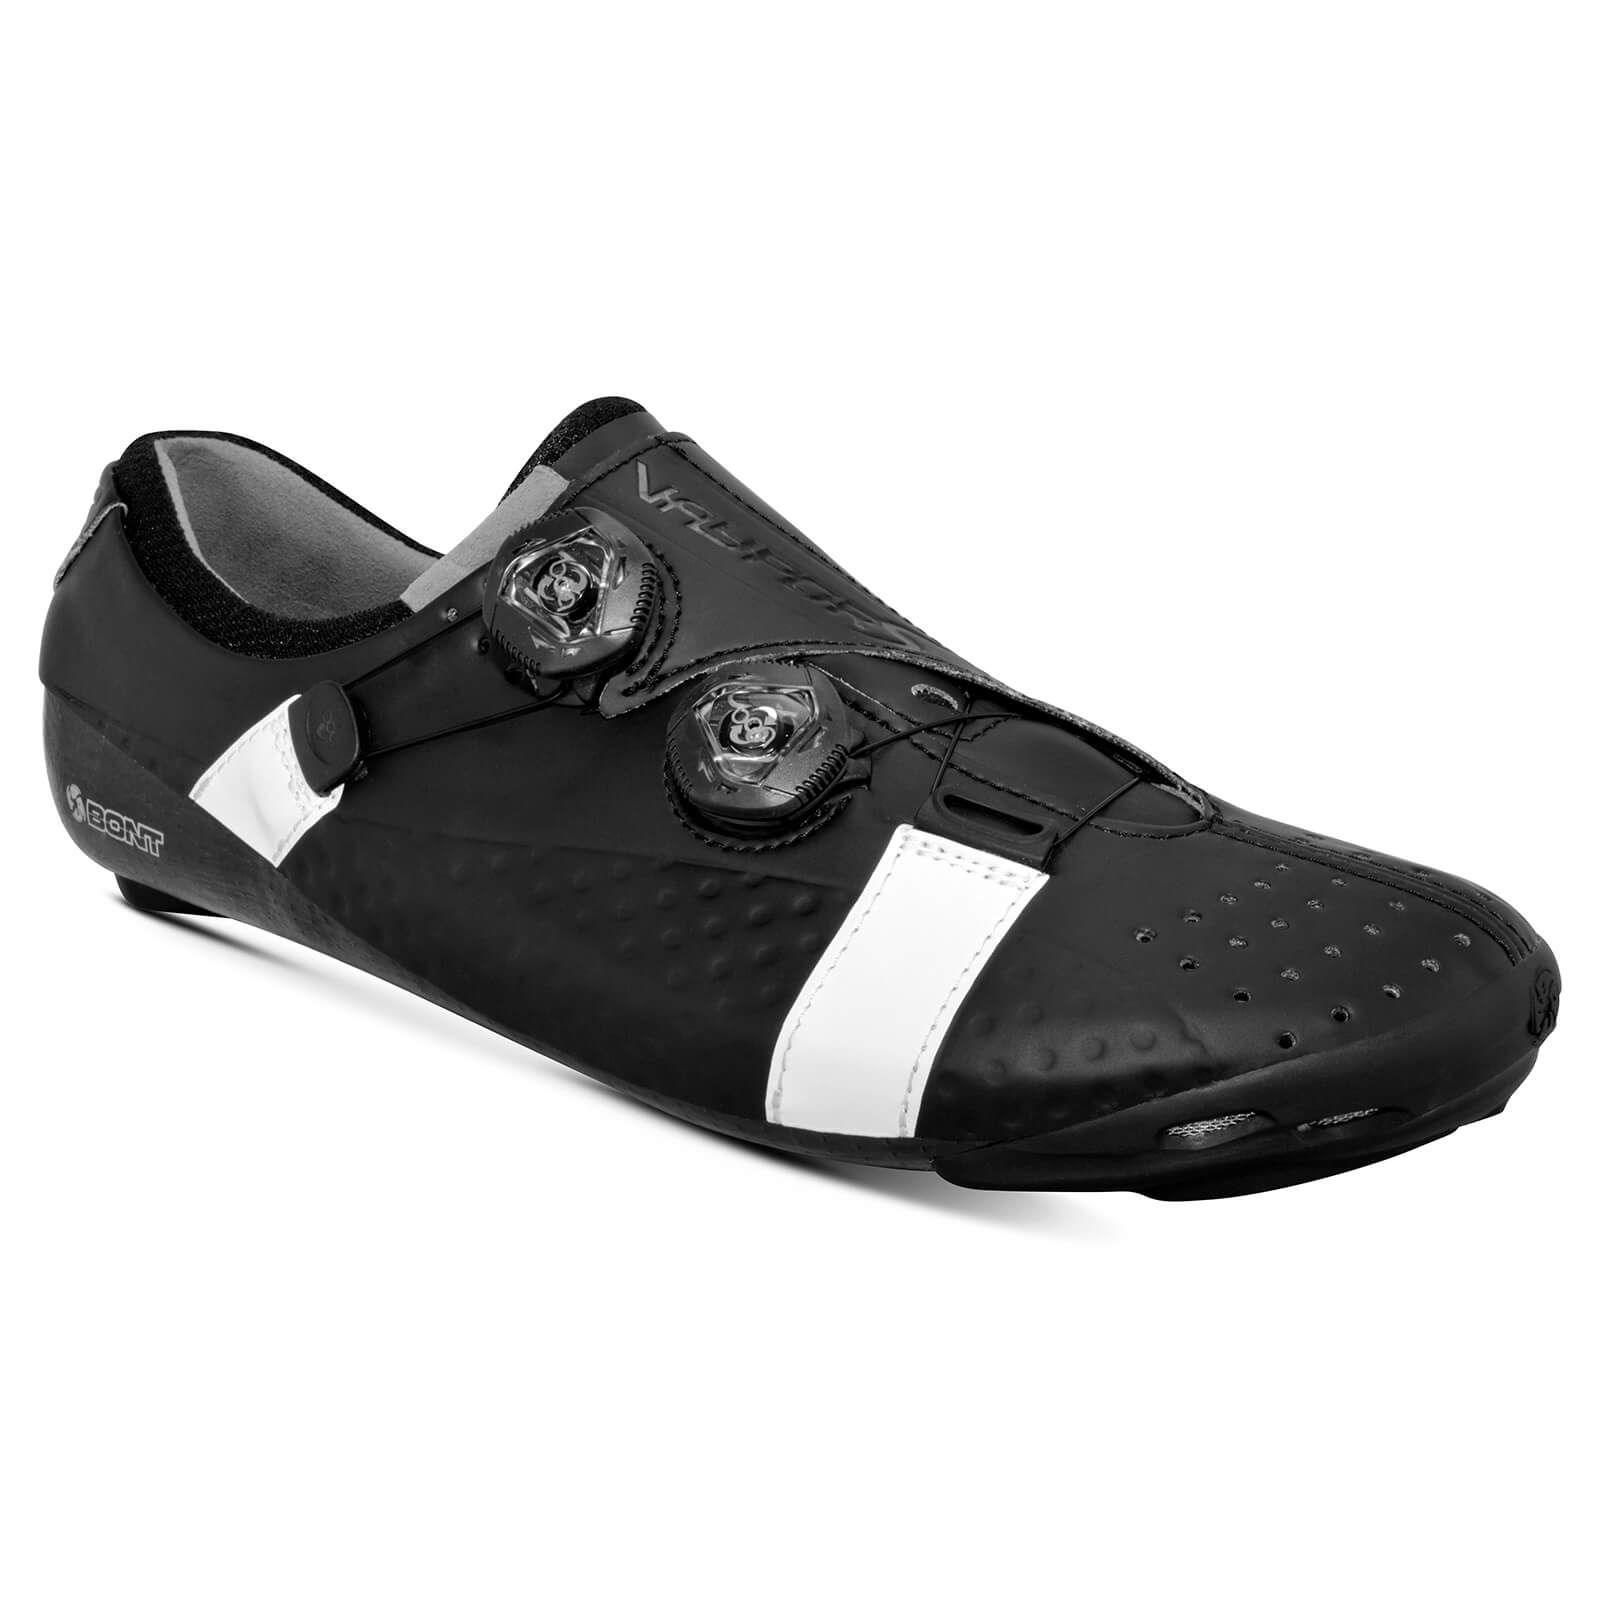 Bont Vaypor S Road Shoes - EU 42 - Standard Fit - Black/White